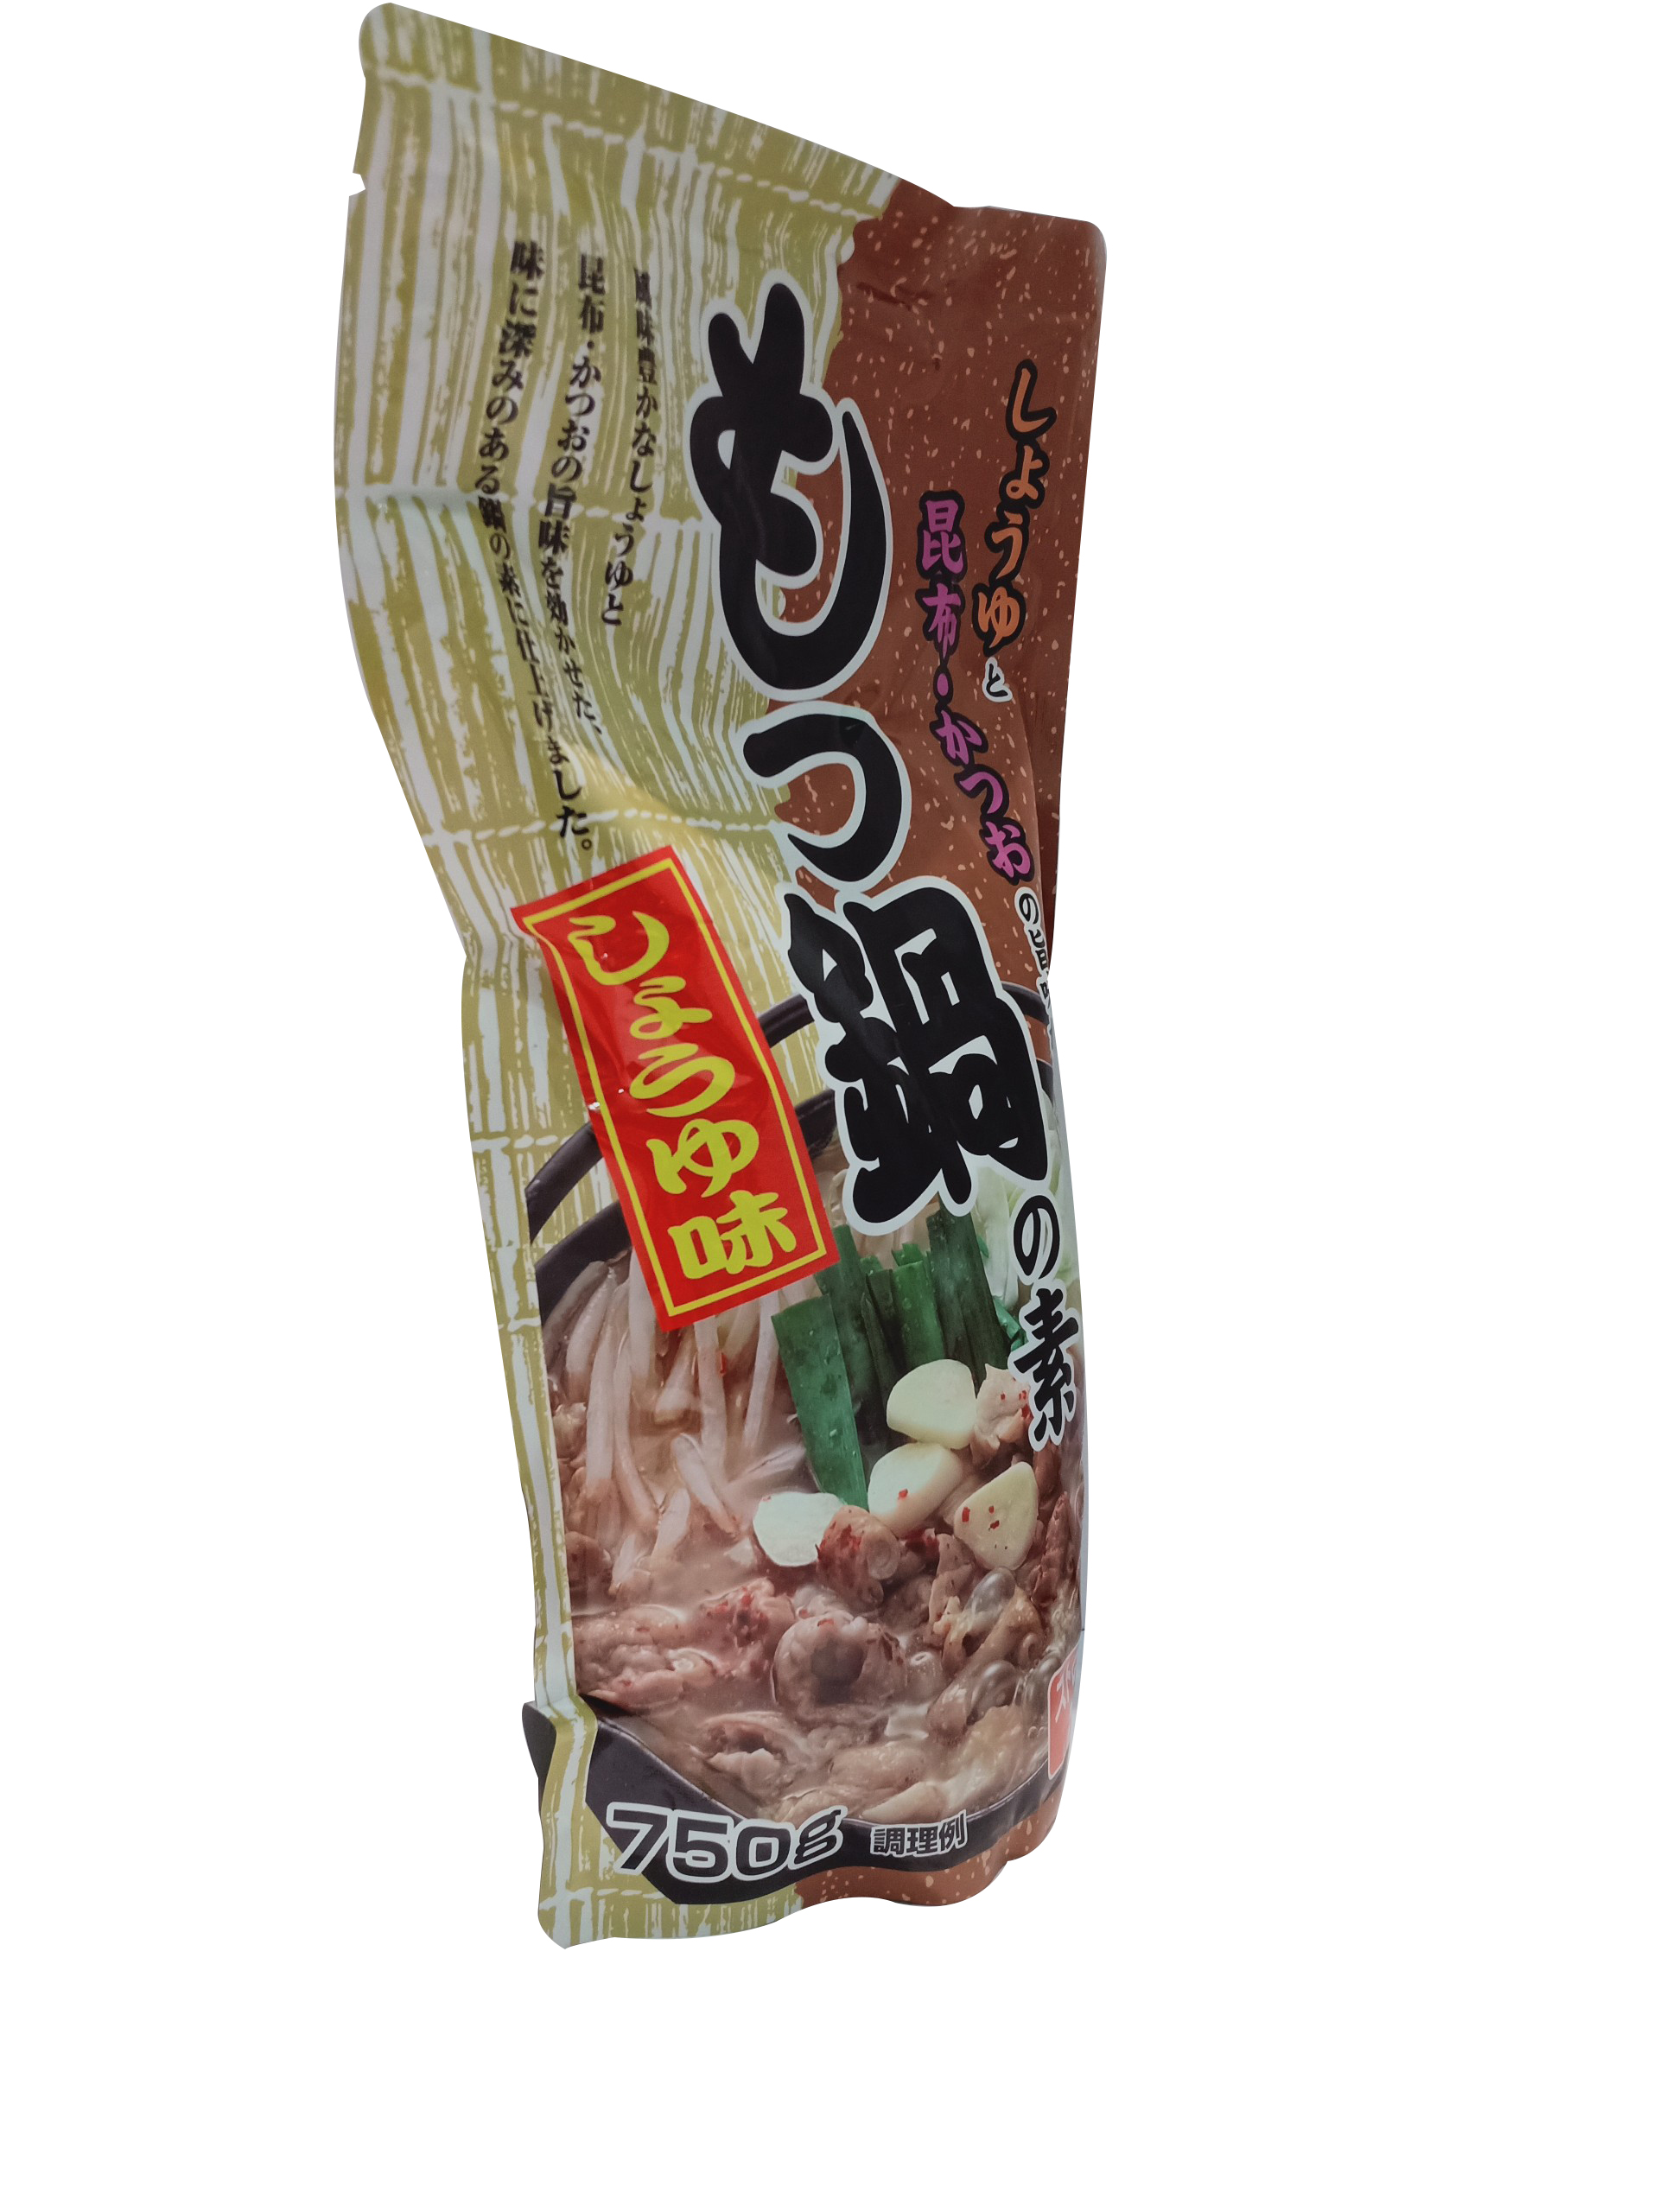 Nước súp lẩu vi motsu (nước tương) hàng nội địa Nhật Bản